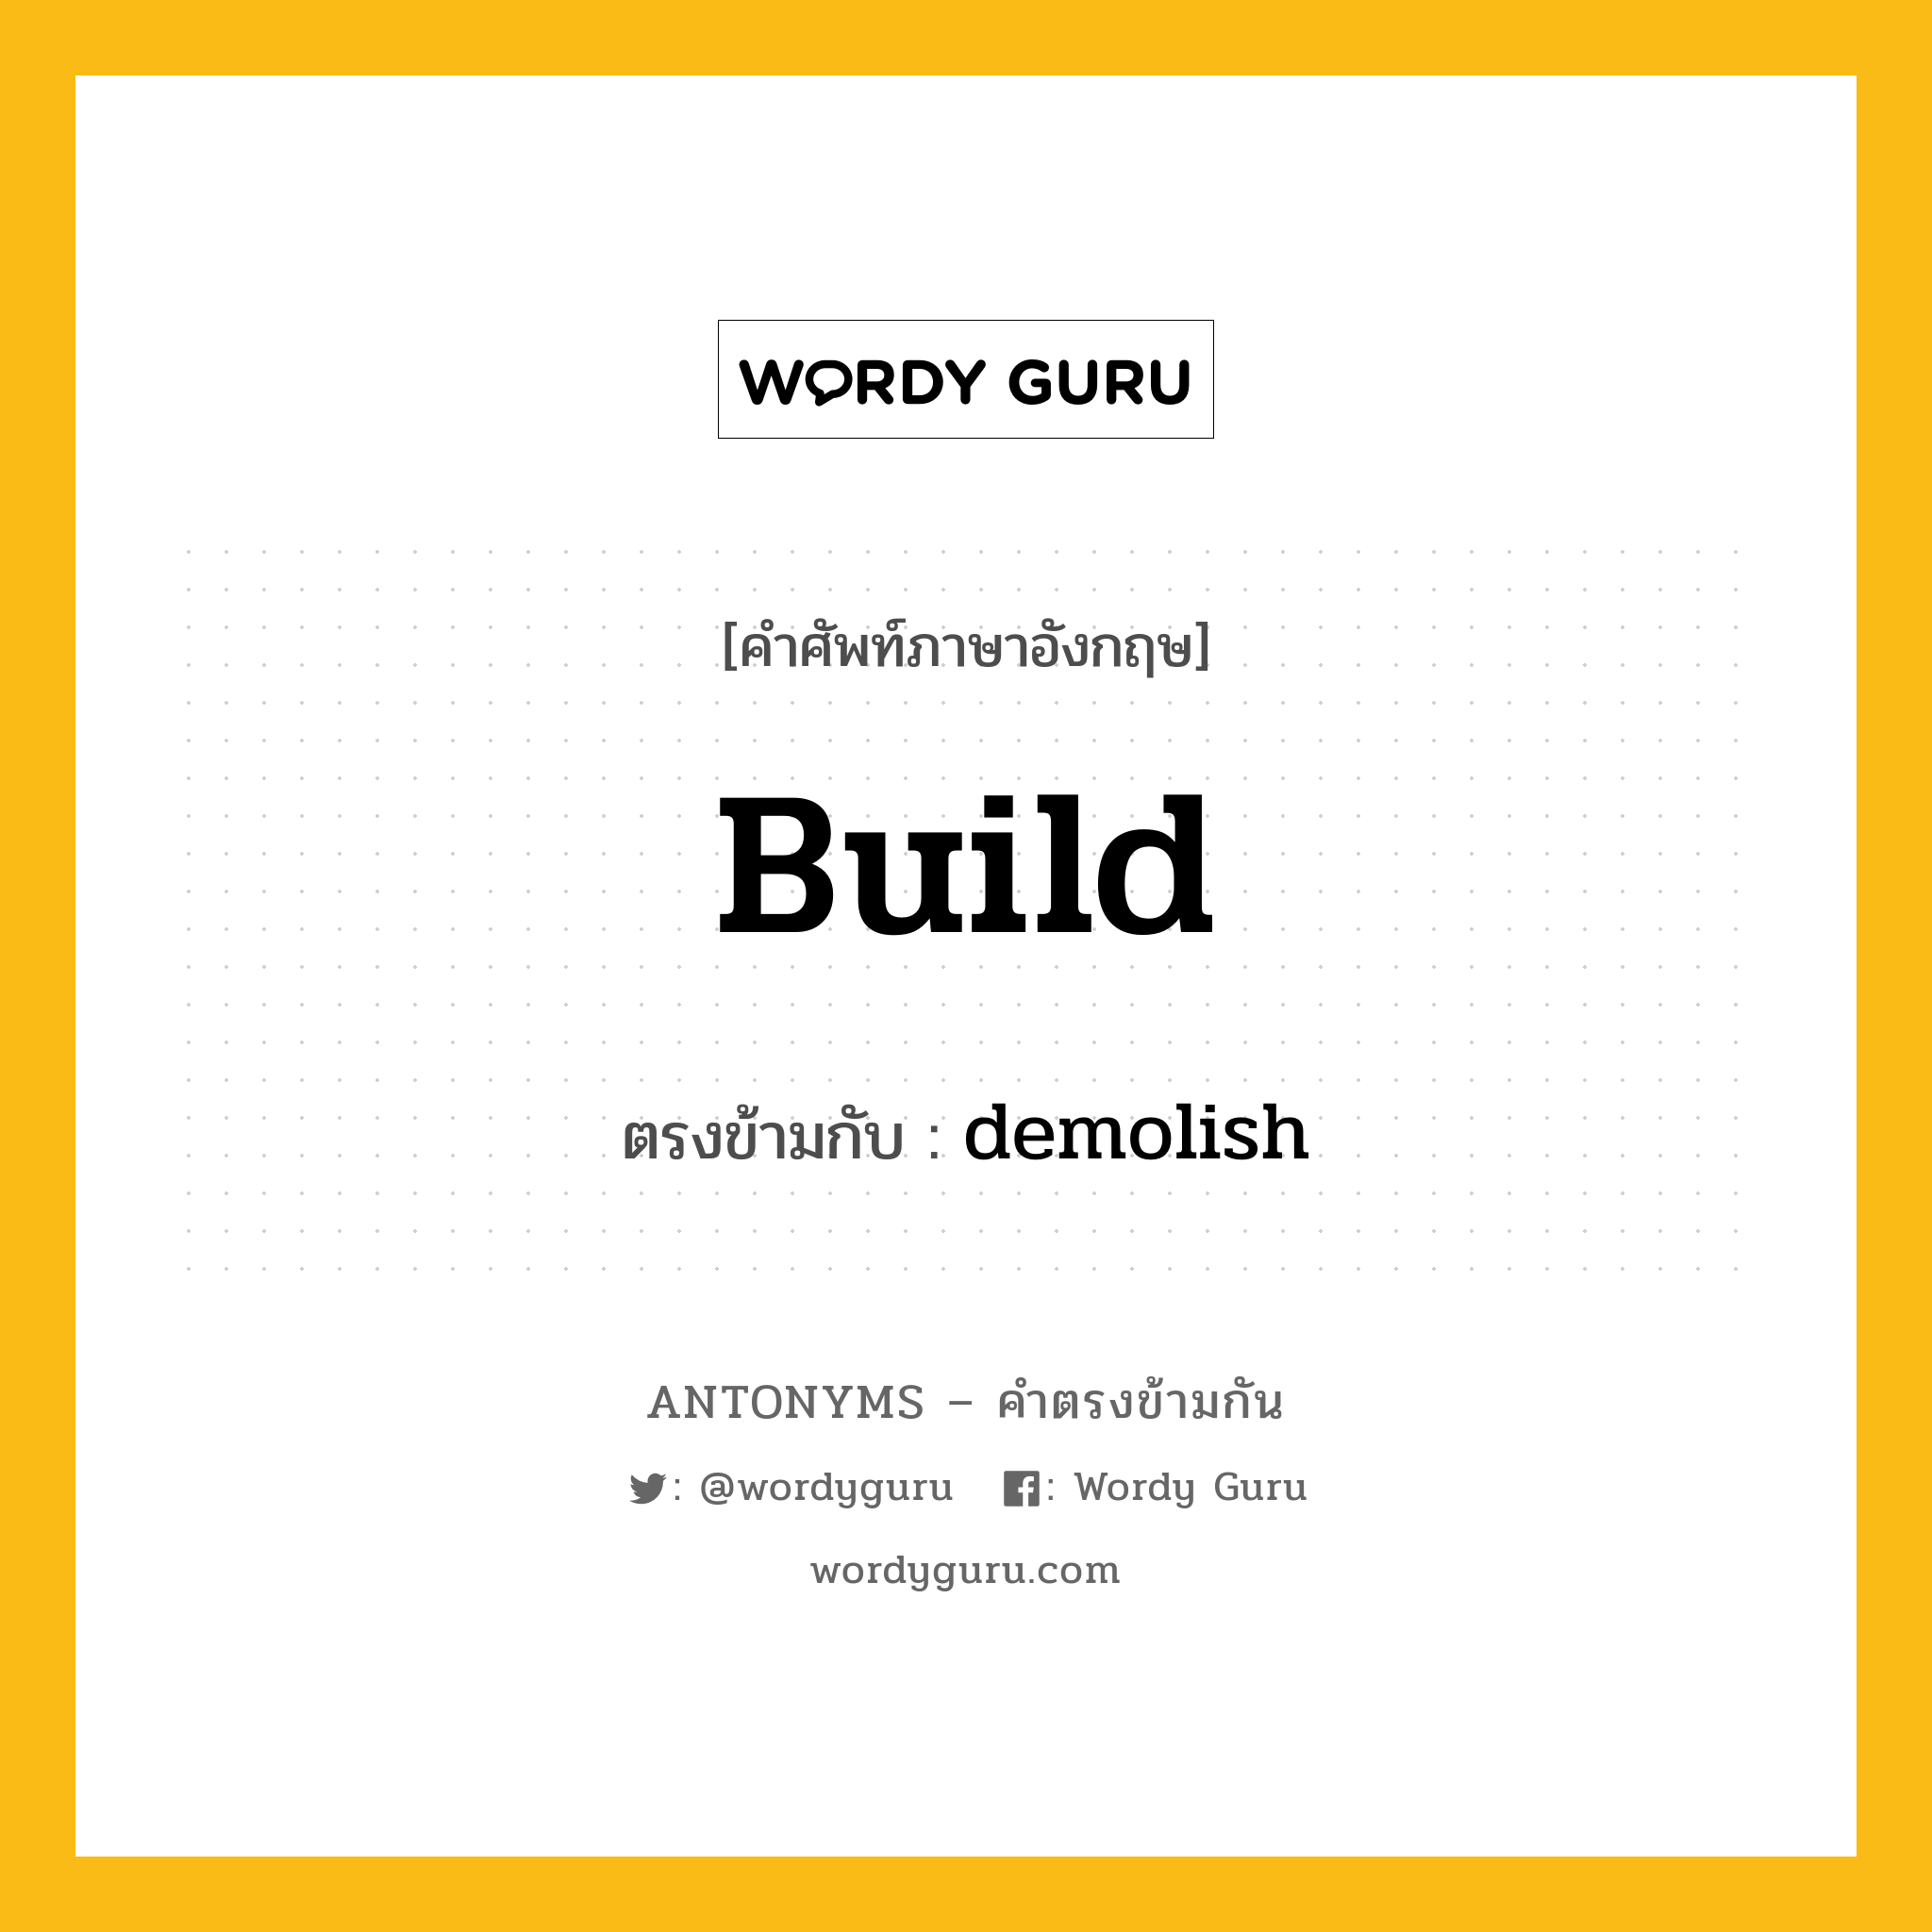 build เป็นคำตรงข้ามกับคำไหนบ้าง?, คำศัพท์ภาษาอังกฤษ build ตรงข้ามกับ demolish หมวด demolish